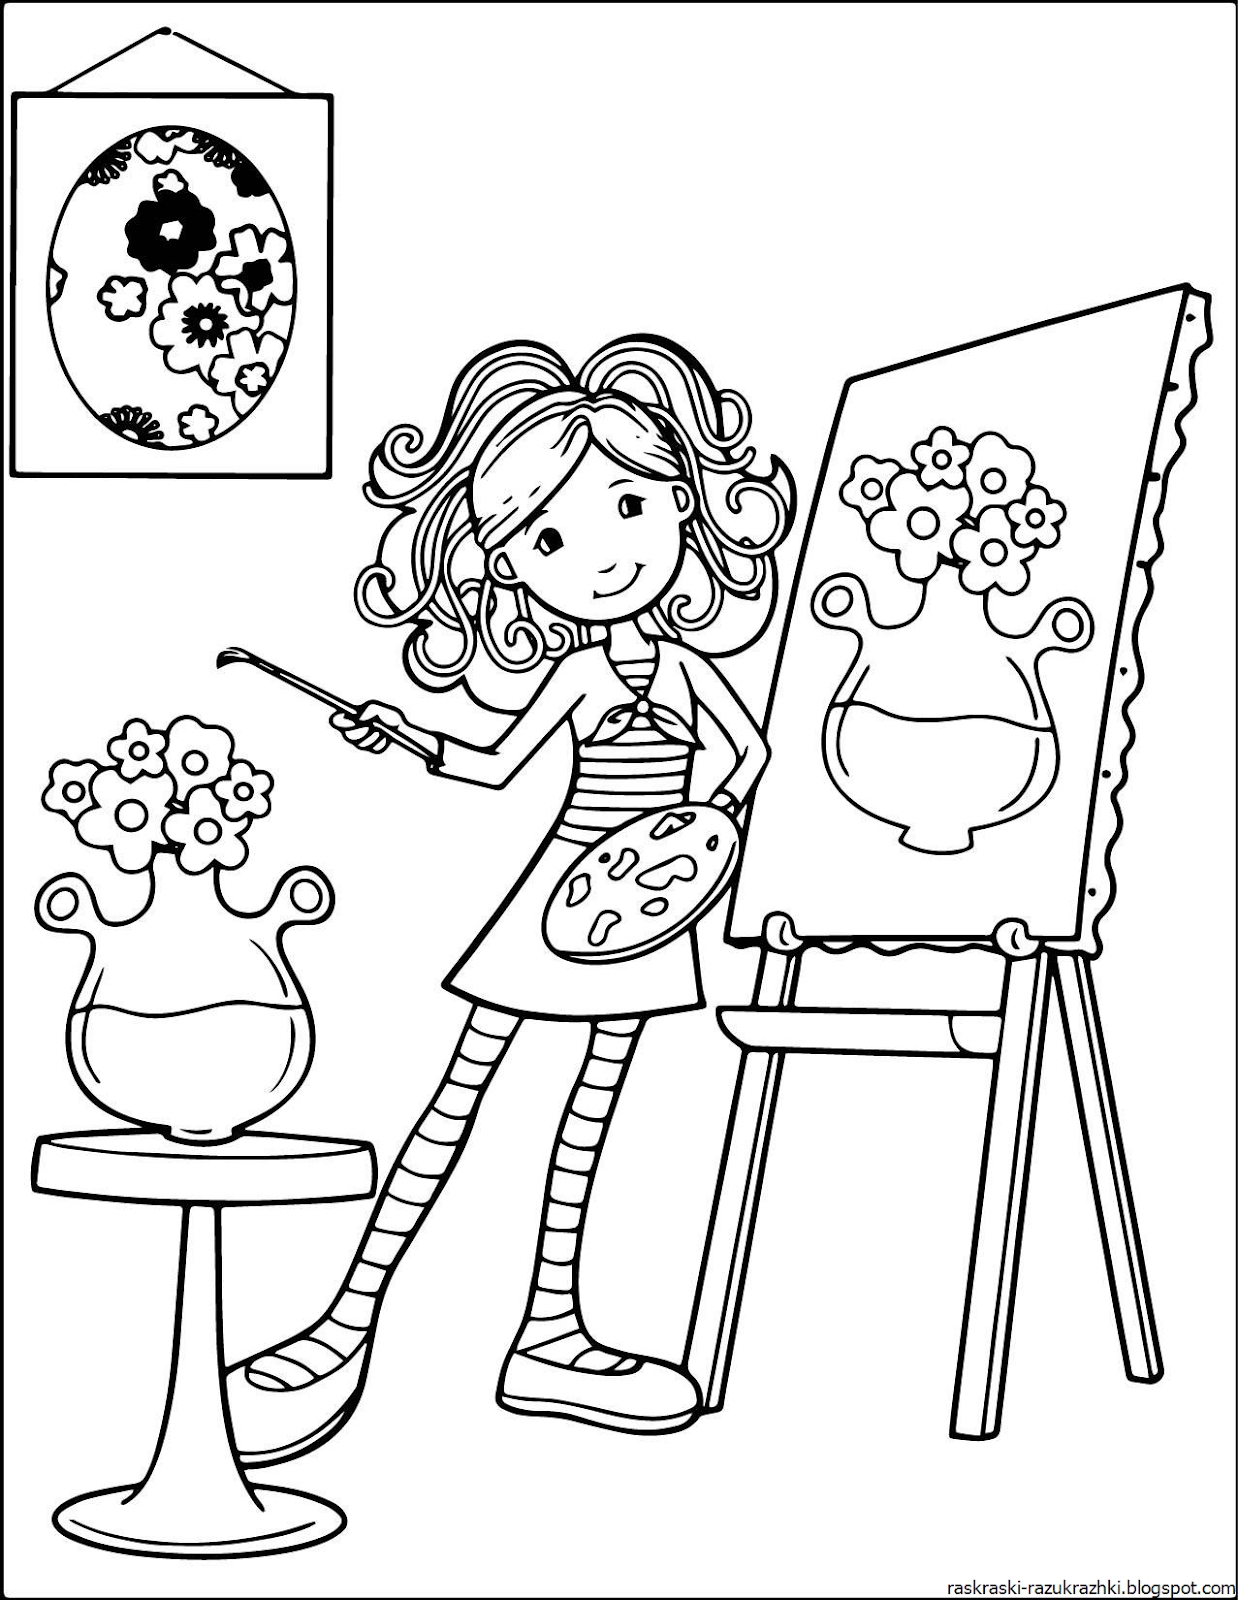 Картинки для раскрашивания для девочек. Рисунки для девочек. Картинки раскраски для девочек. Девочка раскраска для детей.